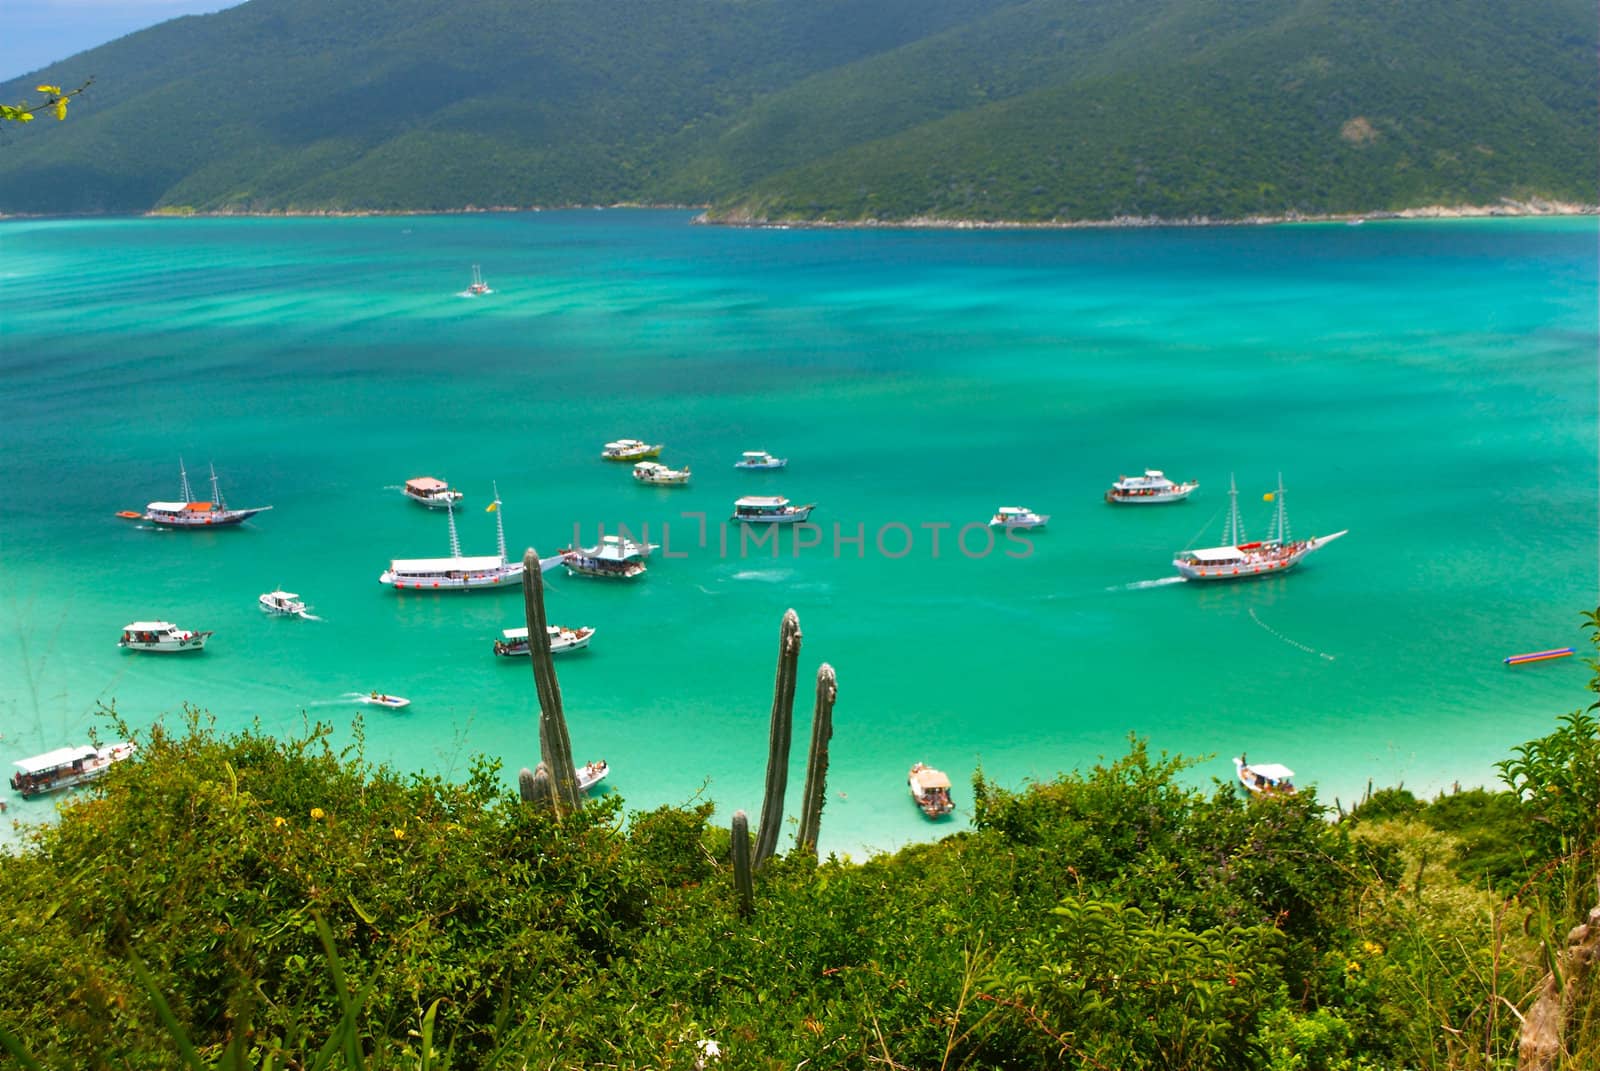 Boats over a crystalline turquoise sea in Arraial do Cabo, Rio de janeiro, Brazil